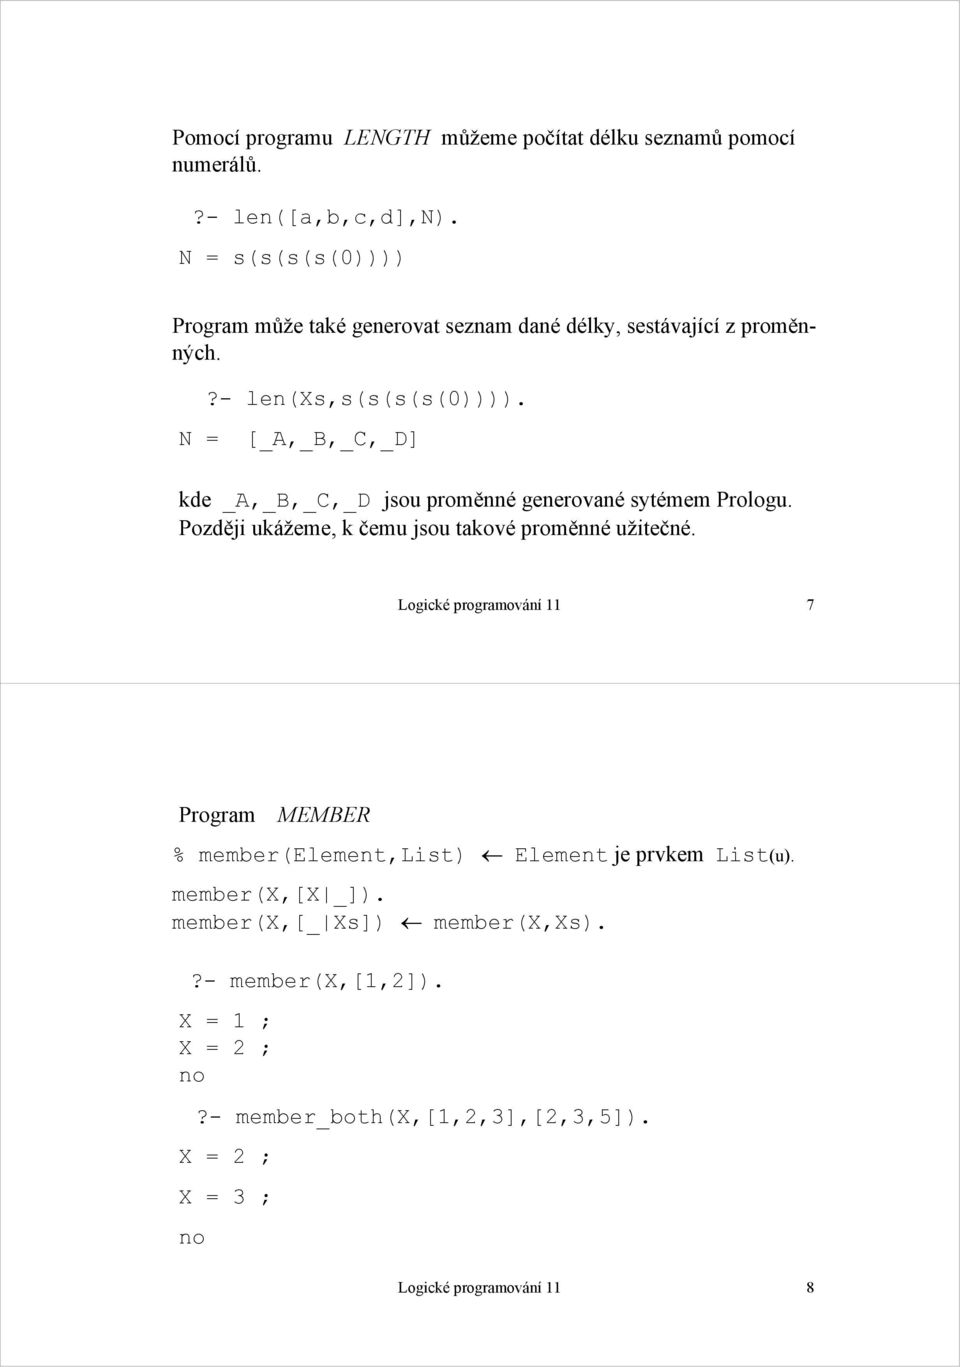 N = [_A,_B,_C,_D] kde _A,_B,_C,_D jsou proměnné generované sytémem Prologu. Později ukážeme, k čemu jsou takové proměnné užitečné.